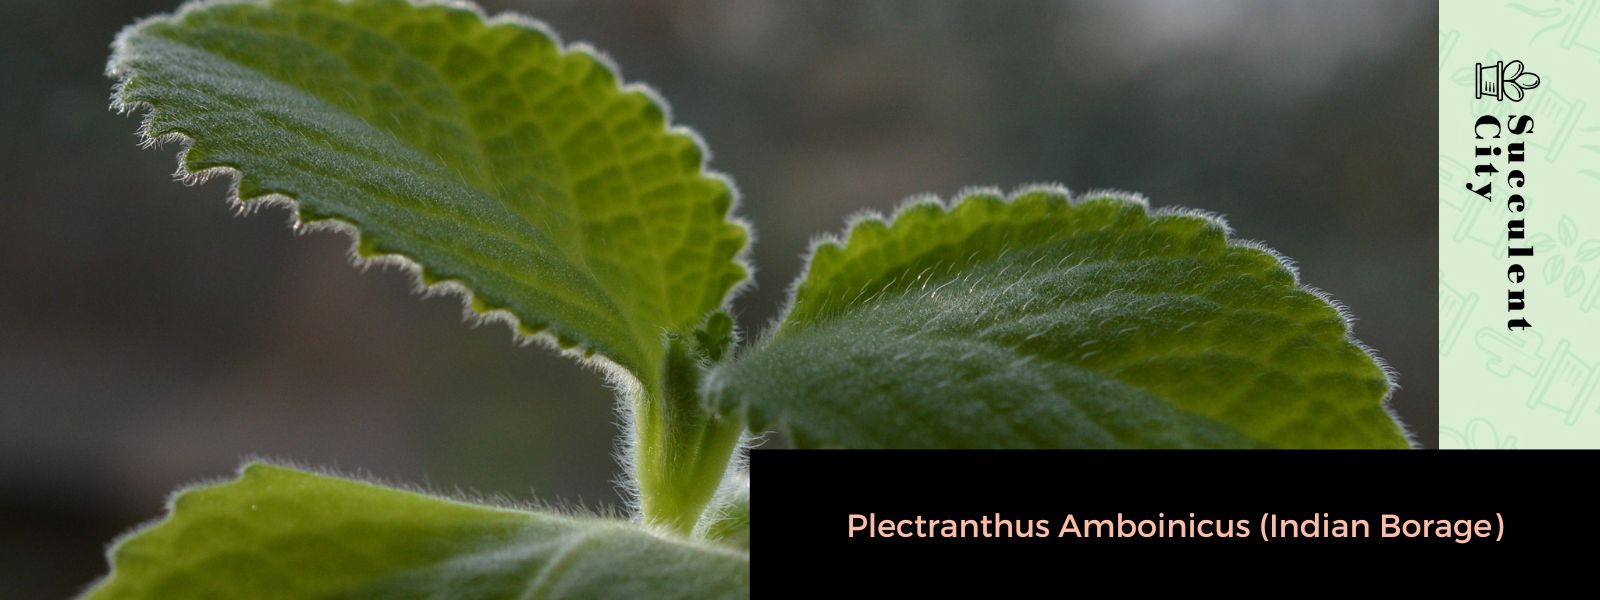 Plectranthus Amboinicus (borraja india)